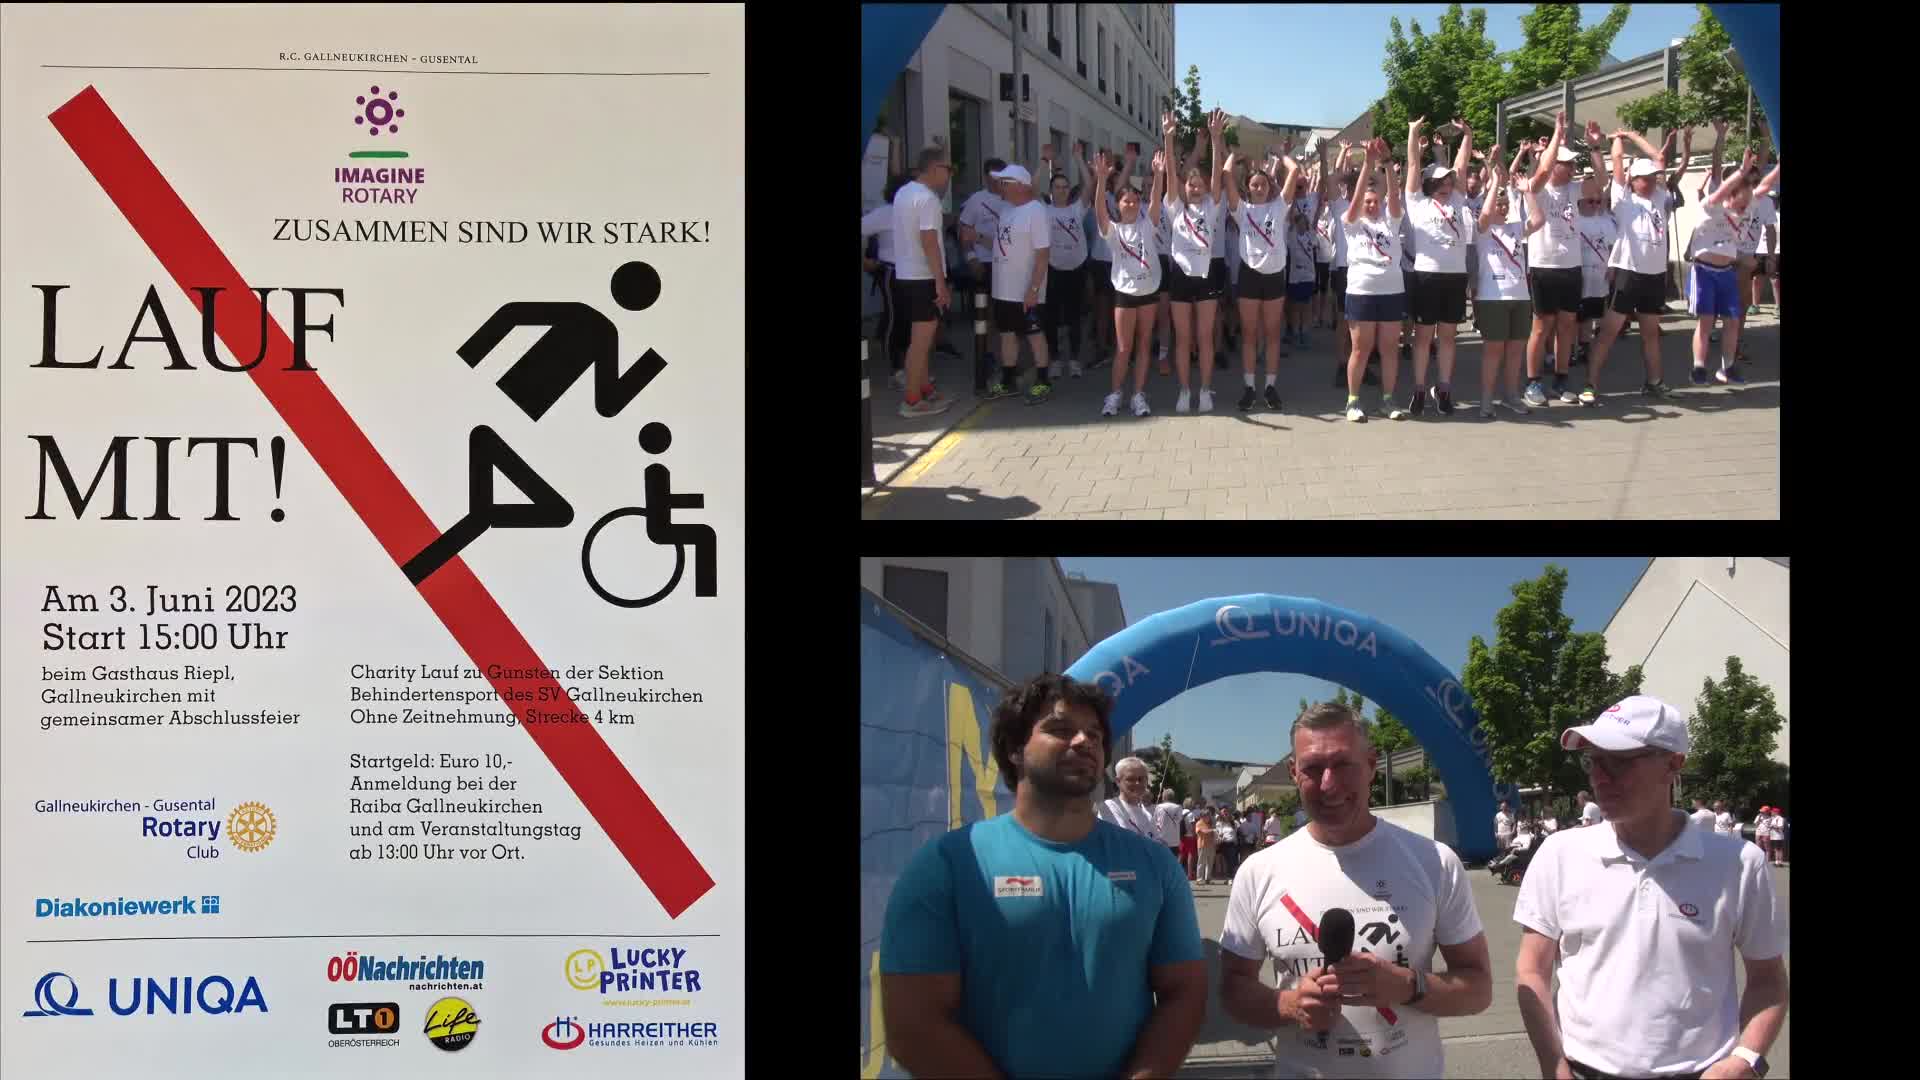 Lauf mit! Charity Run des Rotary Clubs Gallneukirchen-Gusental